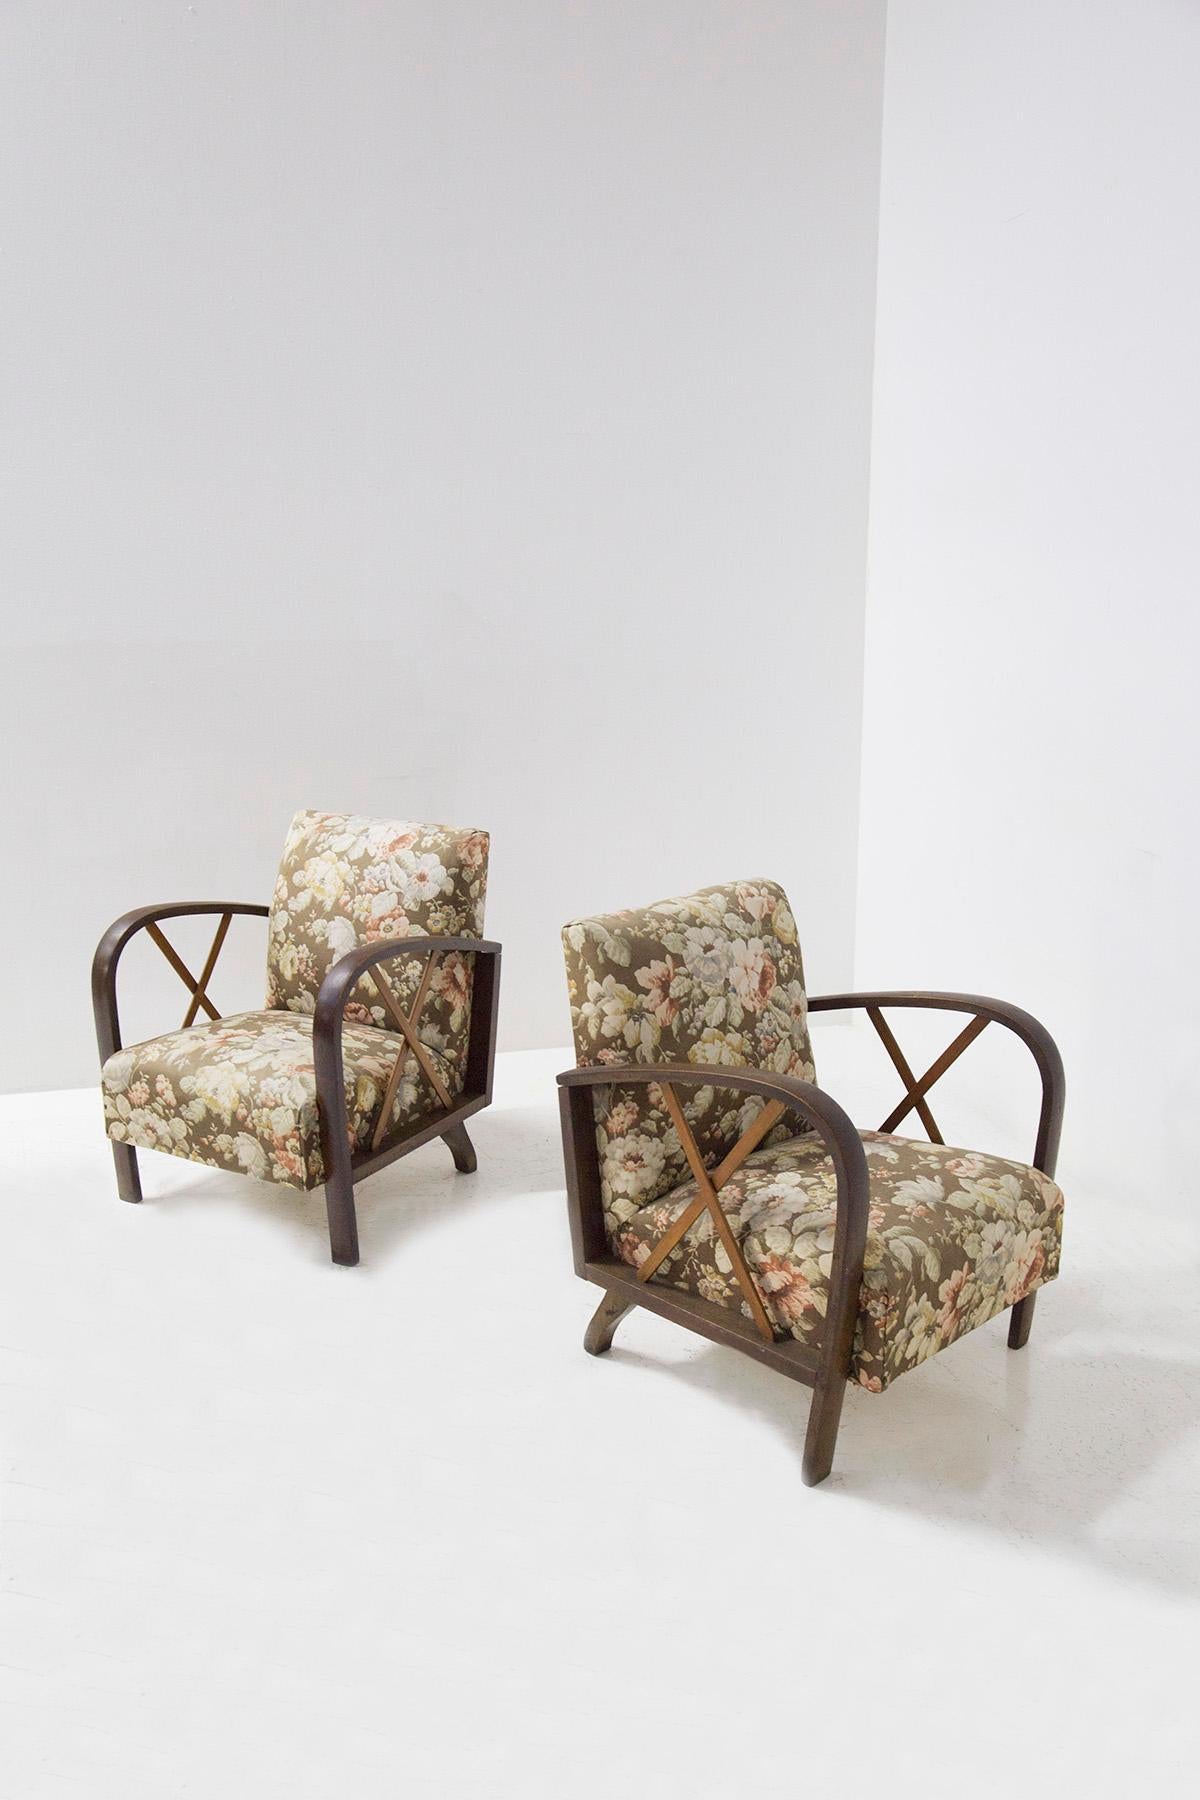 Elegantes Paar italienischer Sessel, die Paolo Buffa aus den 1950er Jahren zugeschrieben werden. Die Sessel sind im Originalzustand der Zeit, auch der Stoff ist original aus der Zeit mit floraler Bindung. Das Gestell ist aus Holz und seine